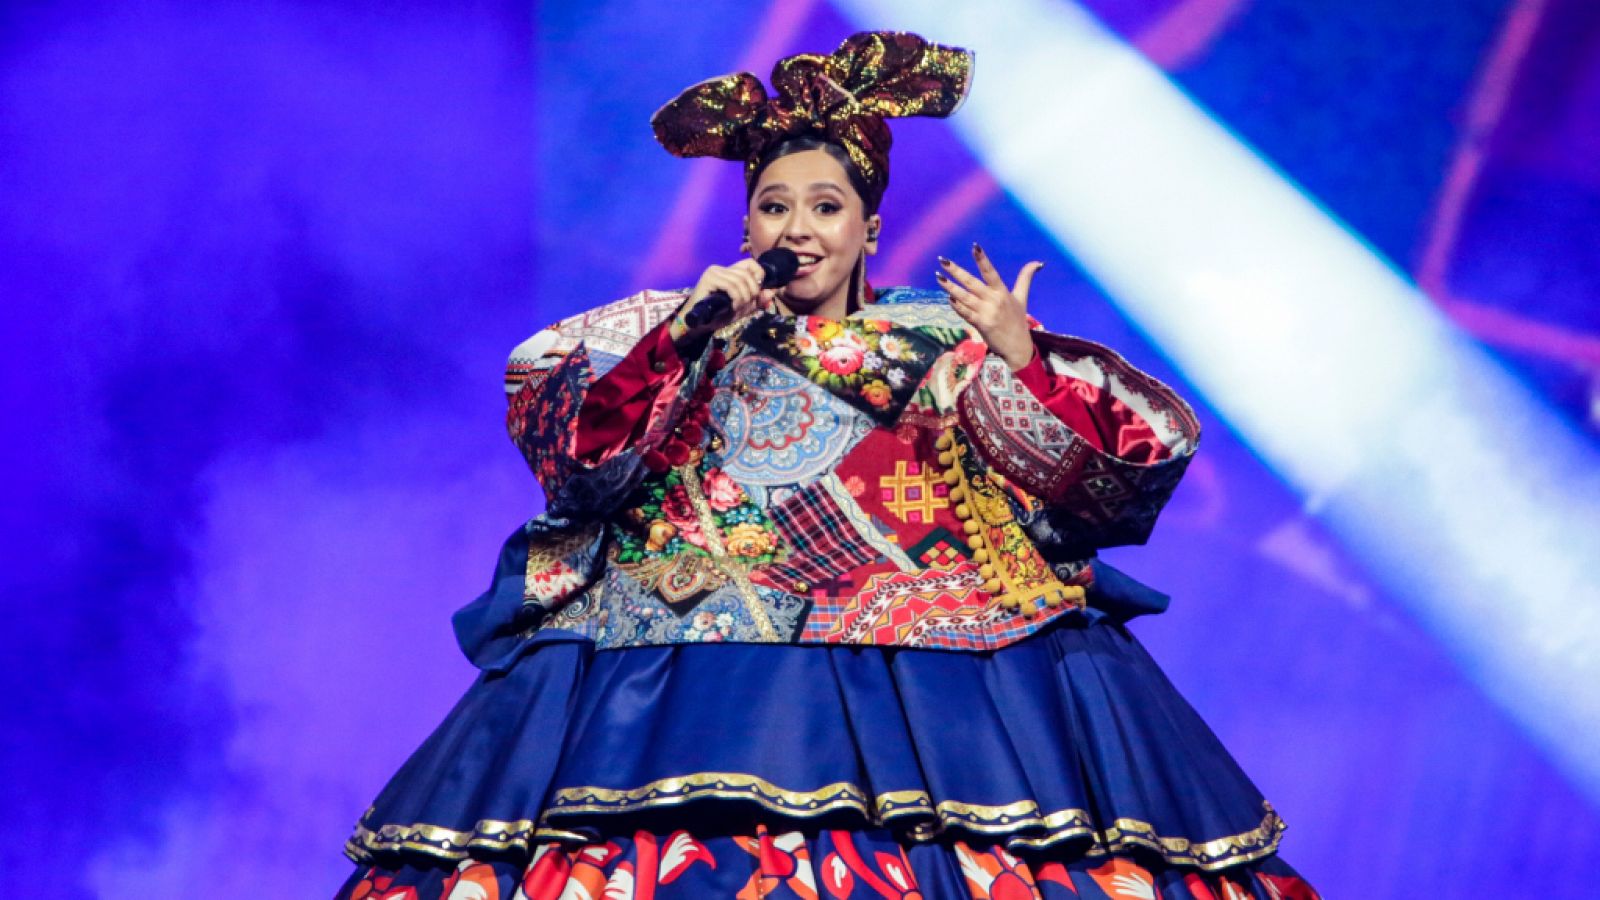 Eurovisión 2021: Rusia canta "Russian woman" en la final